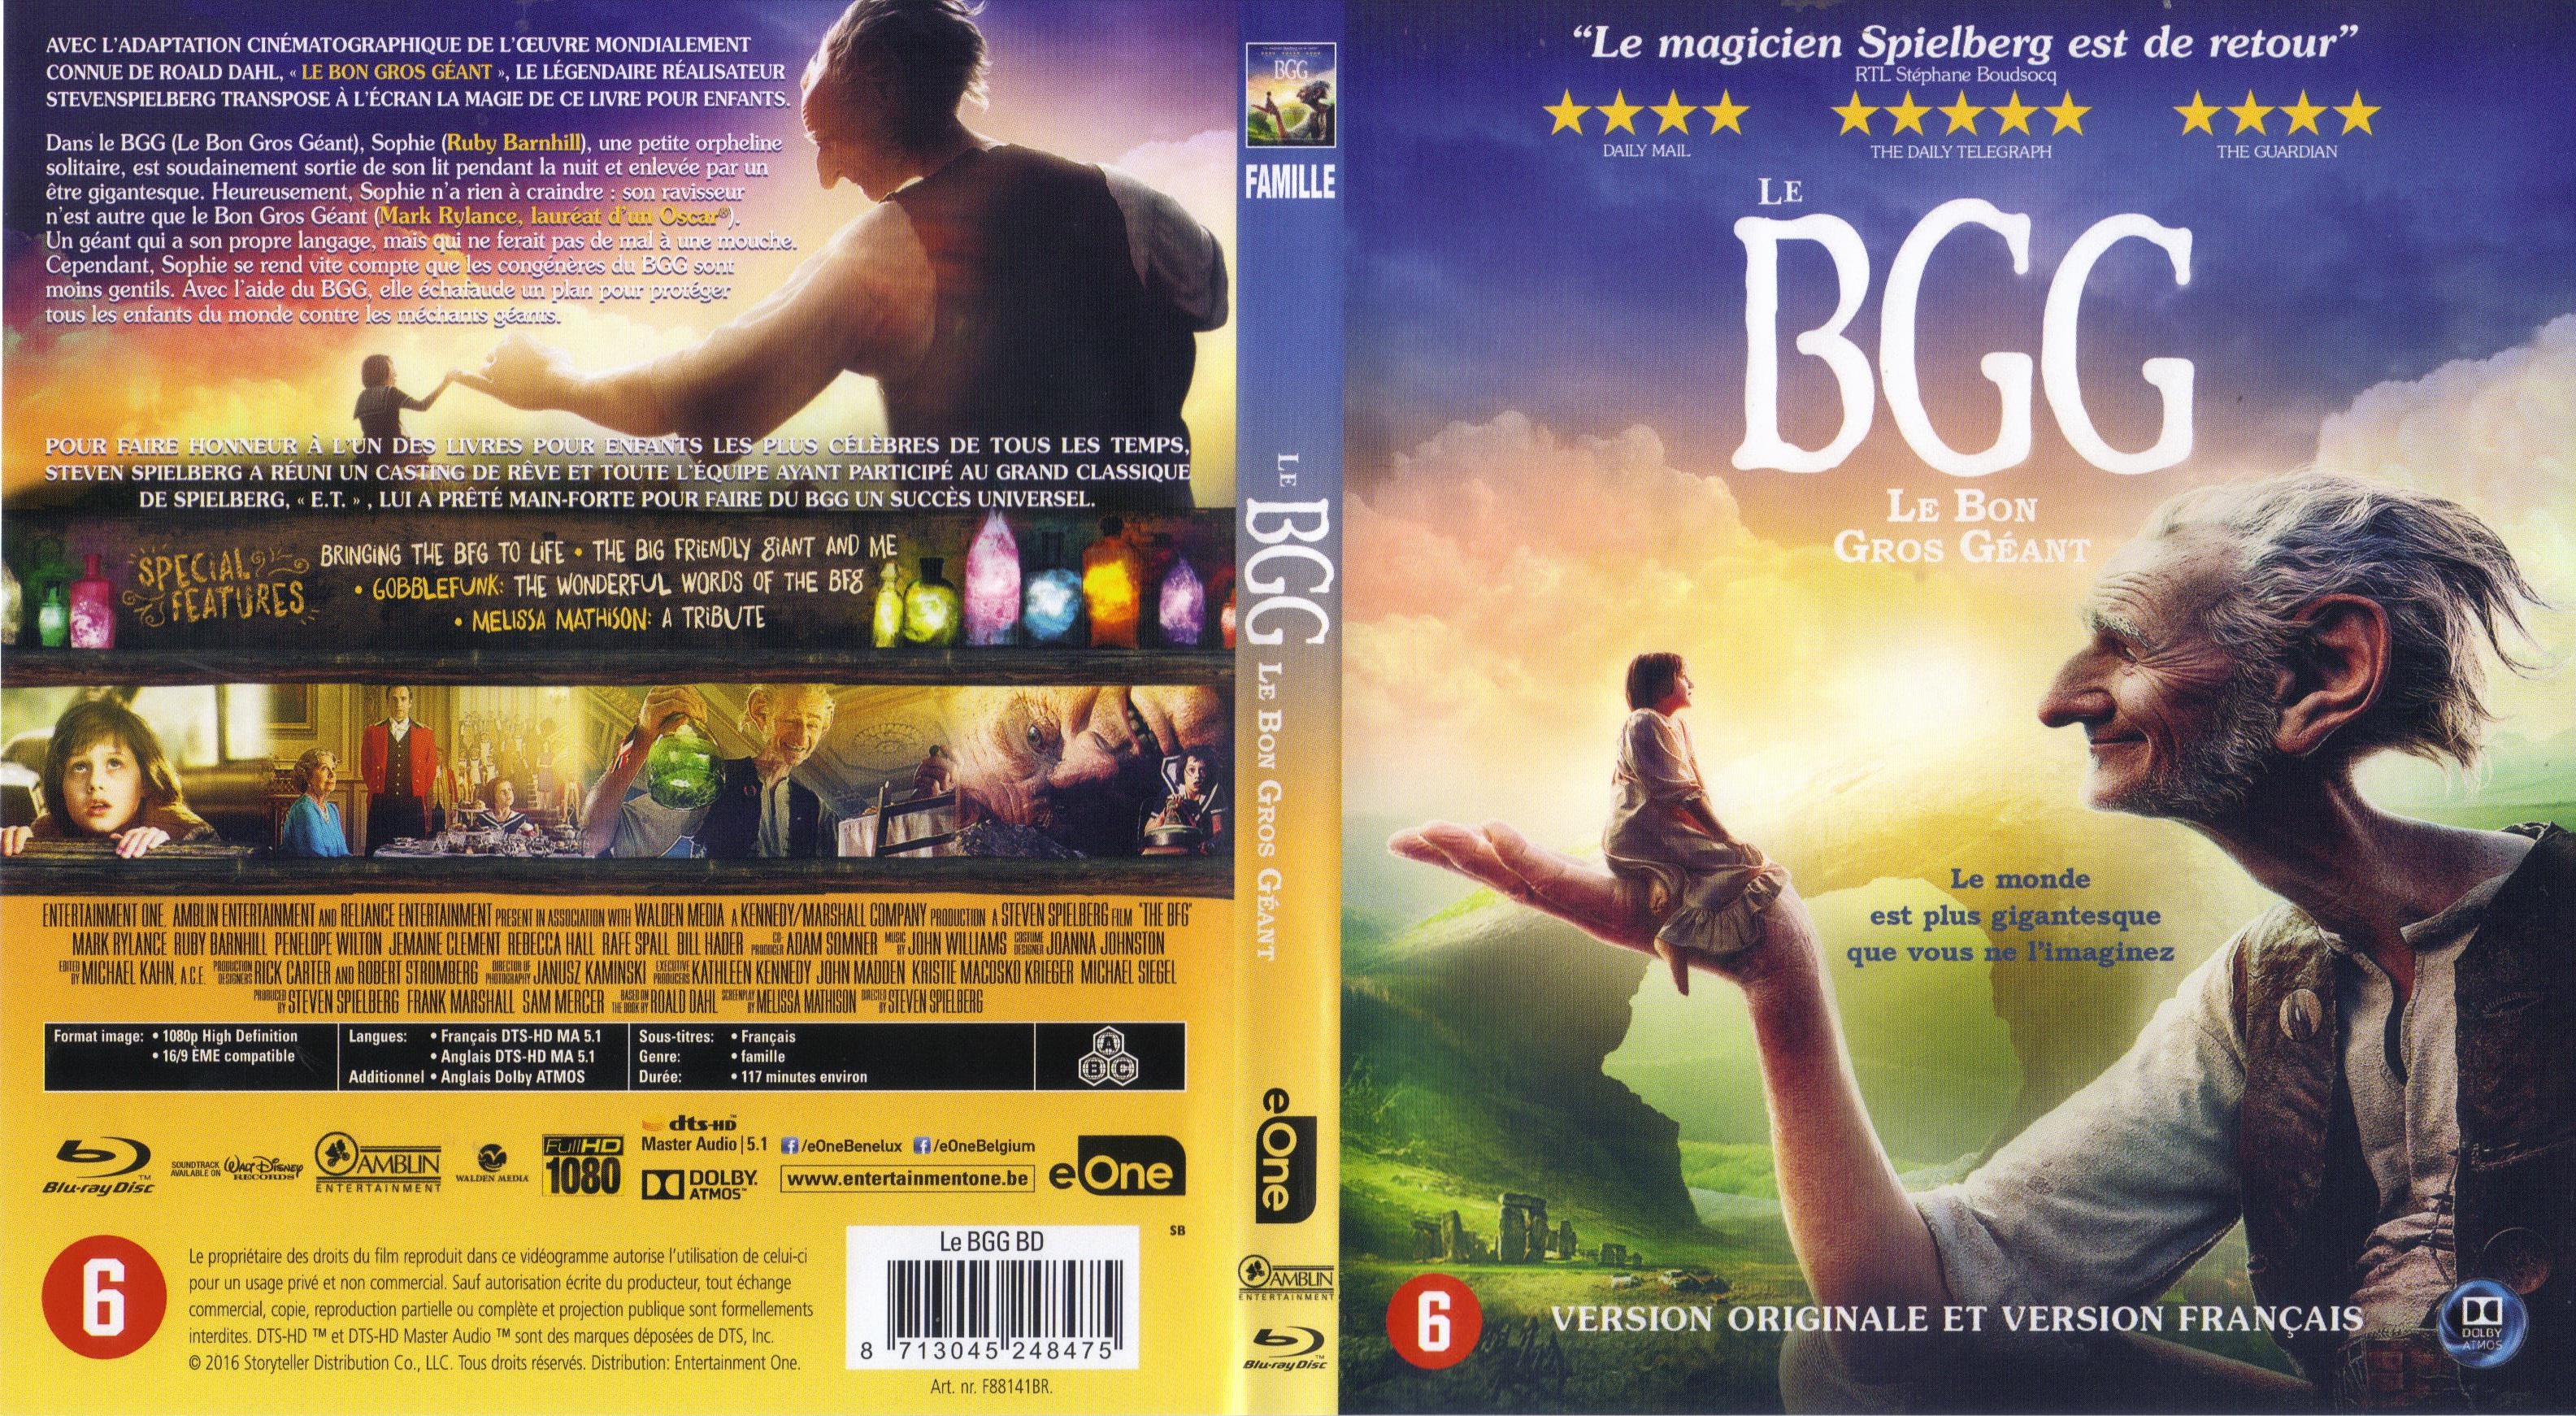 Jaquette Dvd De Le Bgg Le Bon Gros Géant Blu Ray Cinéma Passion